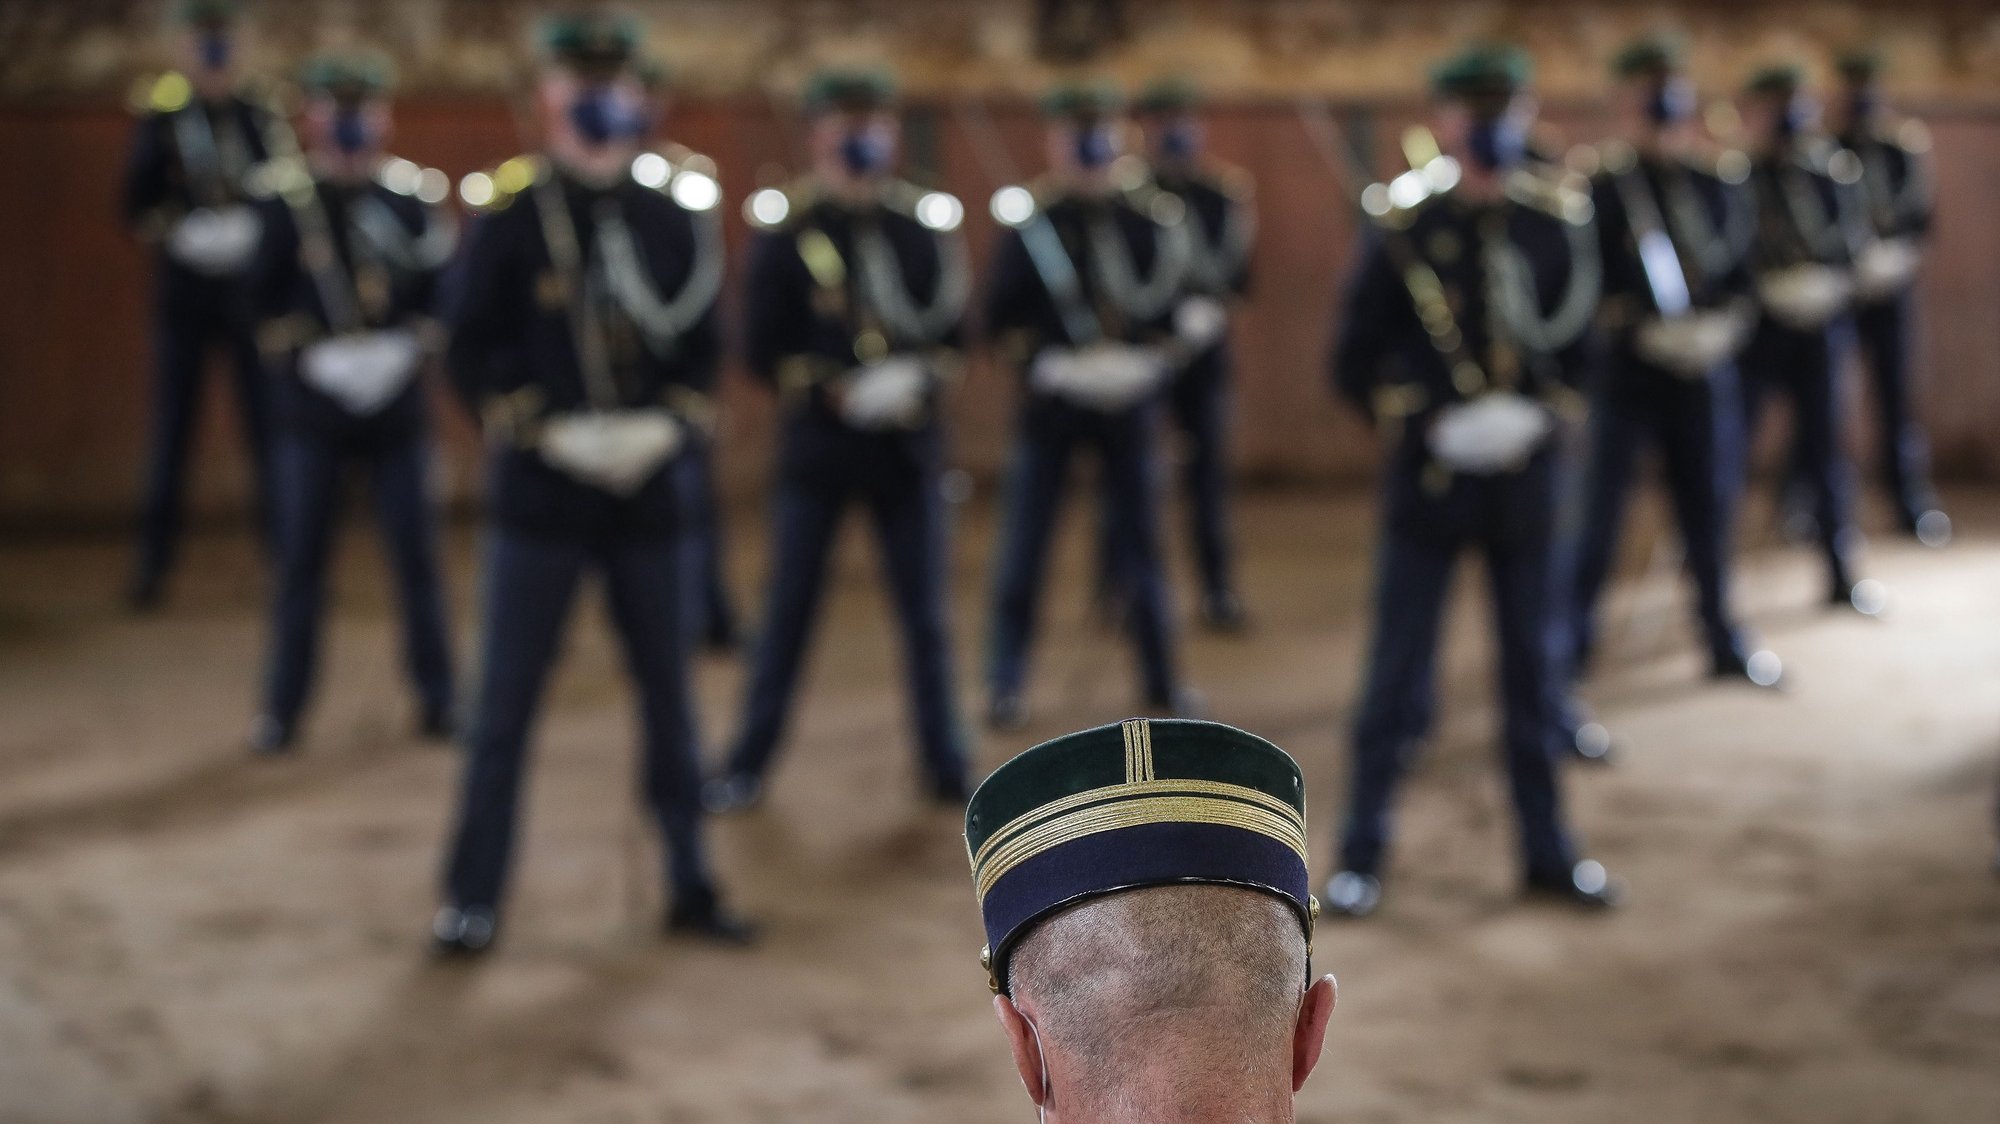 Cerimónia de entrega das espadas aos novos oficiais da Guarda Nacional Republicana (GNR), no 4.º Esquadrão da Unidade de Segurança e Honras de Estado, em Lisboa, 2 de outubro de 2020. MÁRIO CRUZ/LUSA